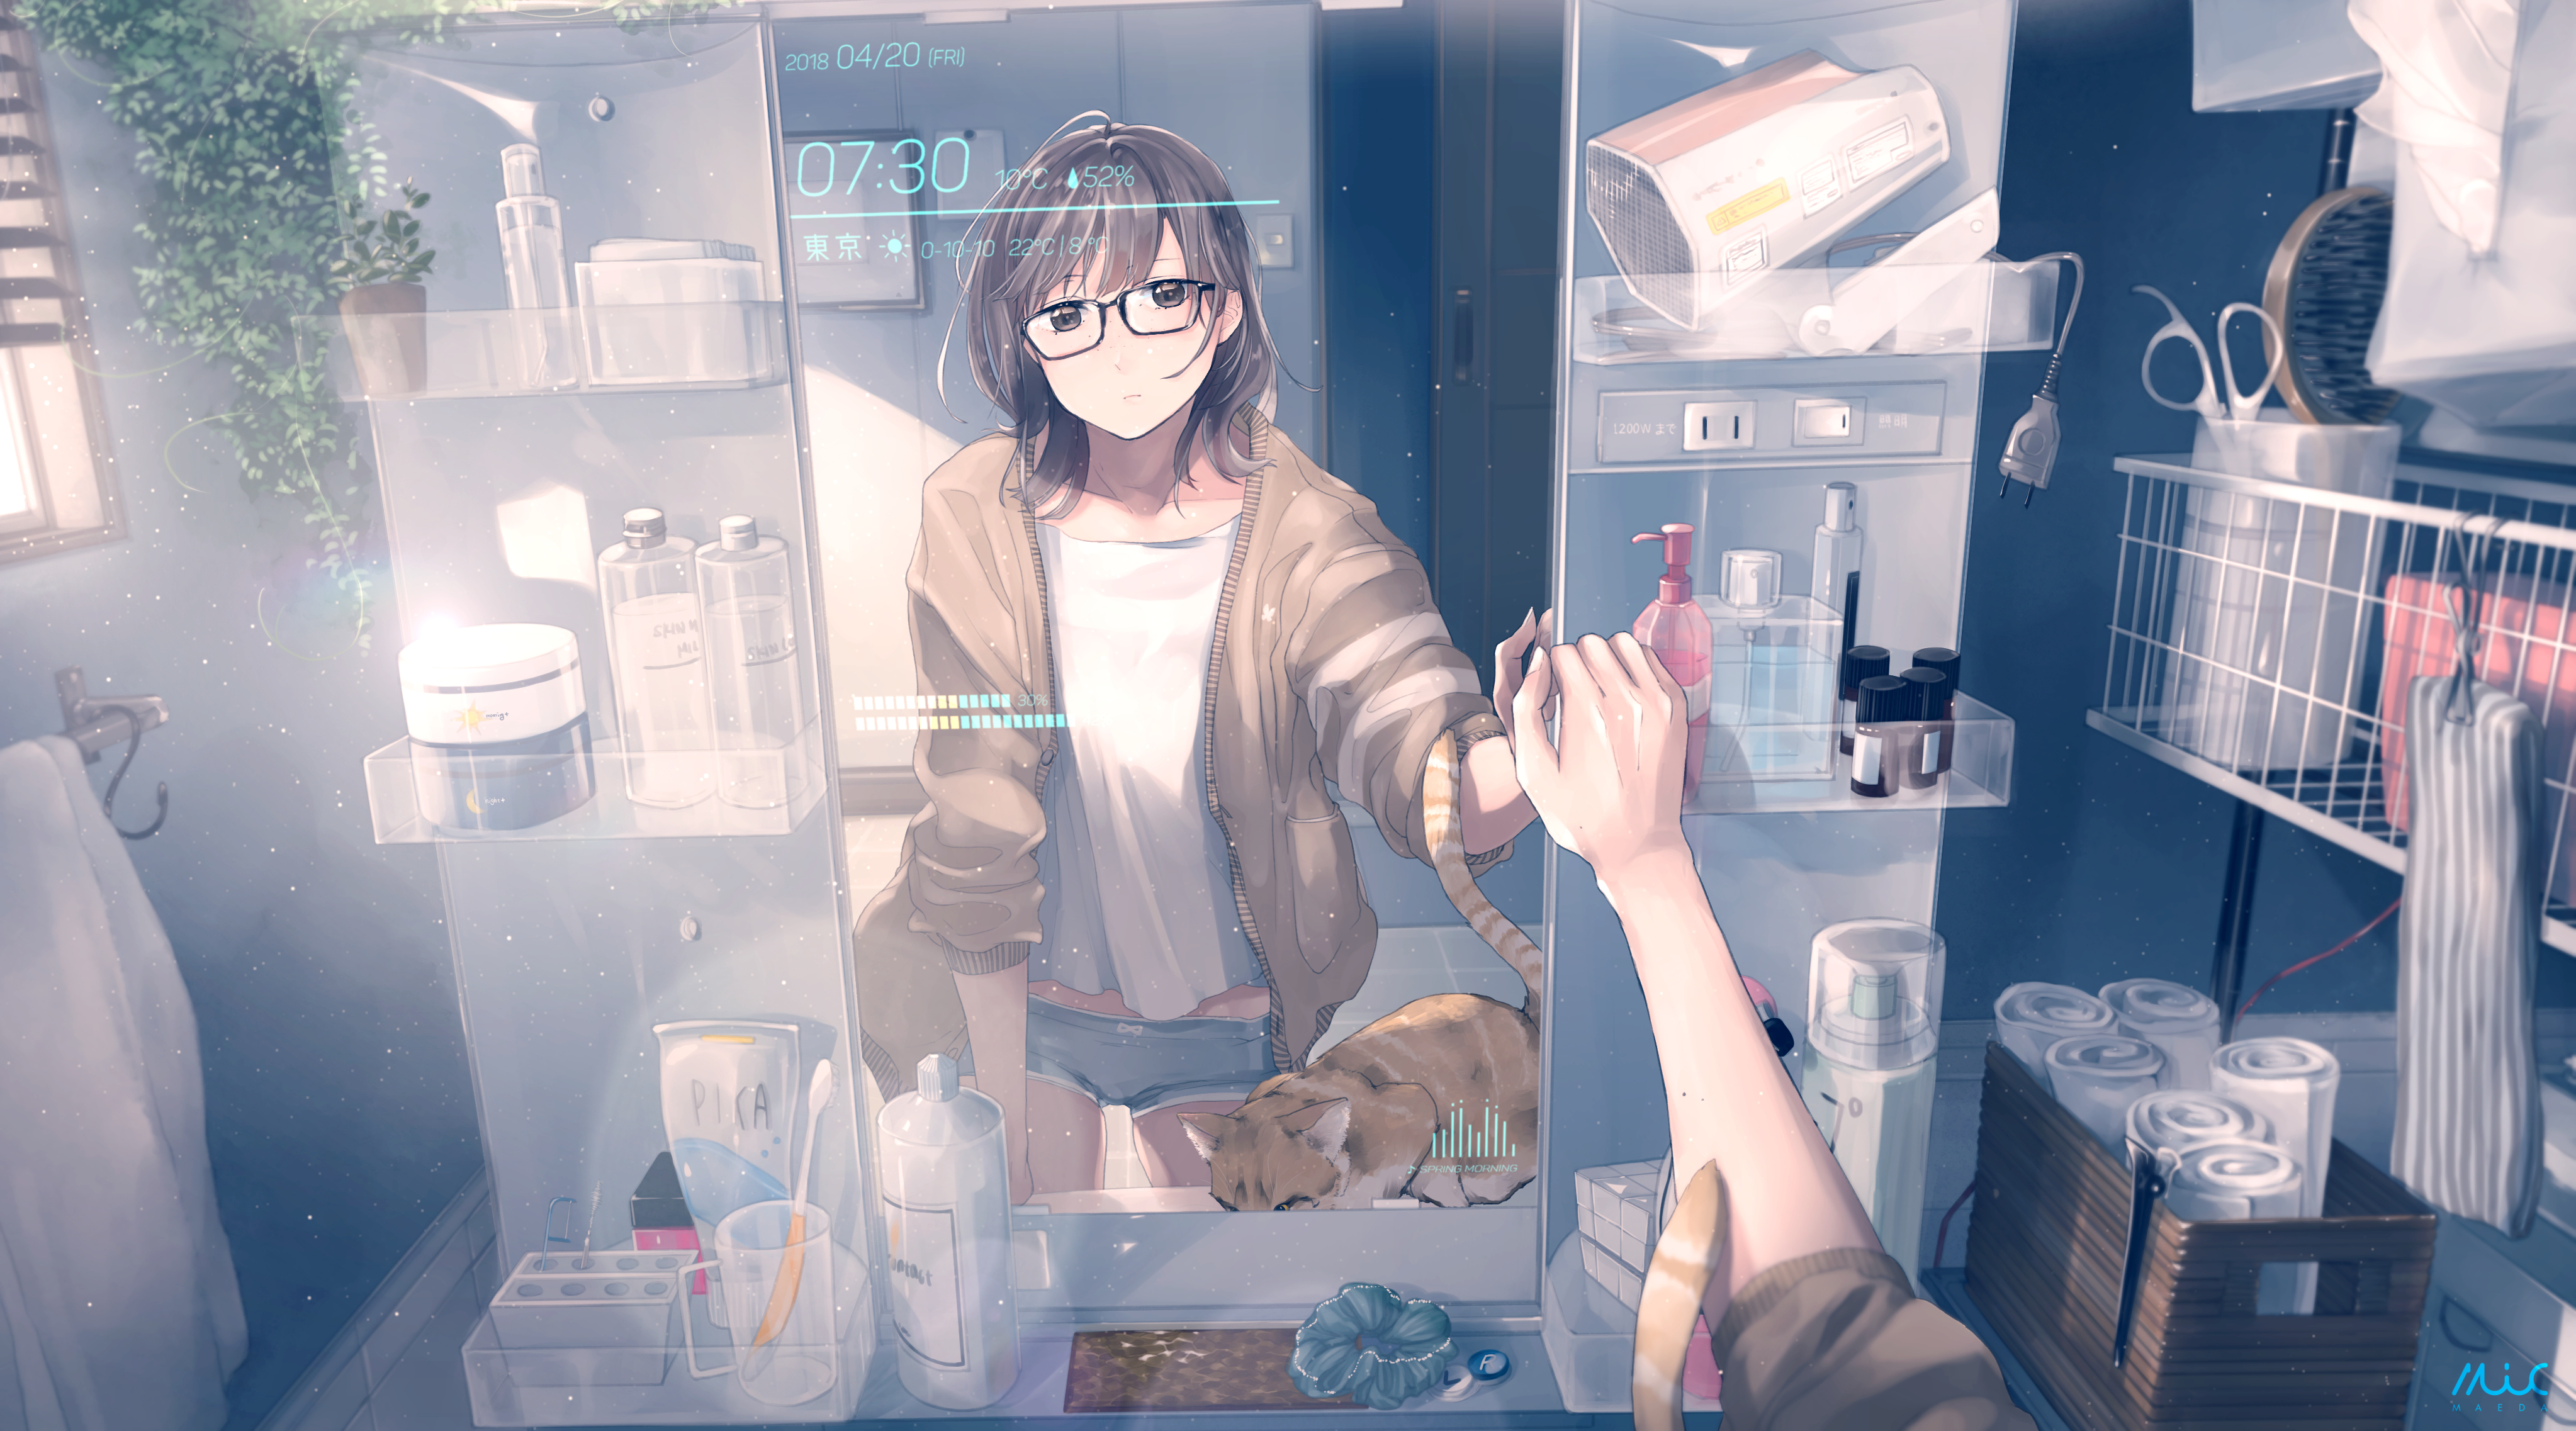 cat, anime, original, bathroom, brown eyes, brown hair, glasses, mirror, short hair, toothbrush